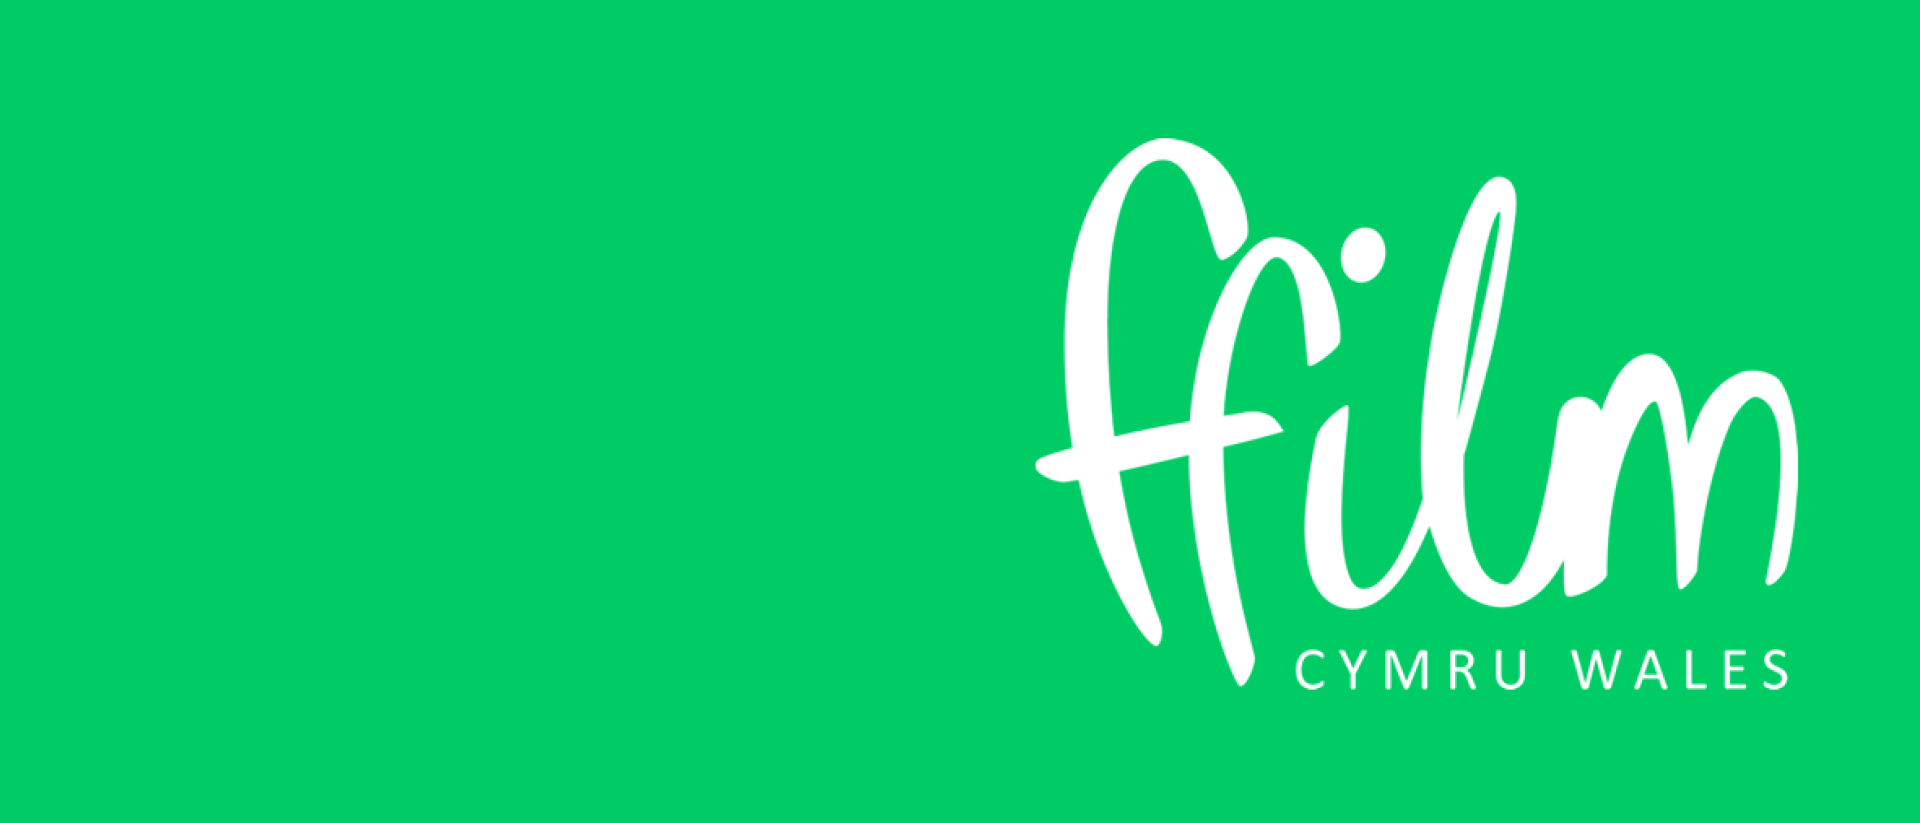 ffilm cymru wales logo on a light grey background